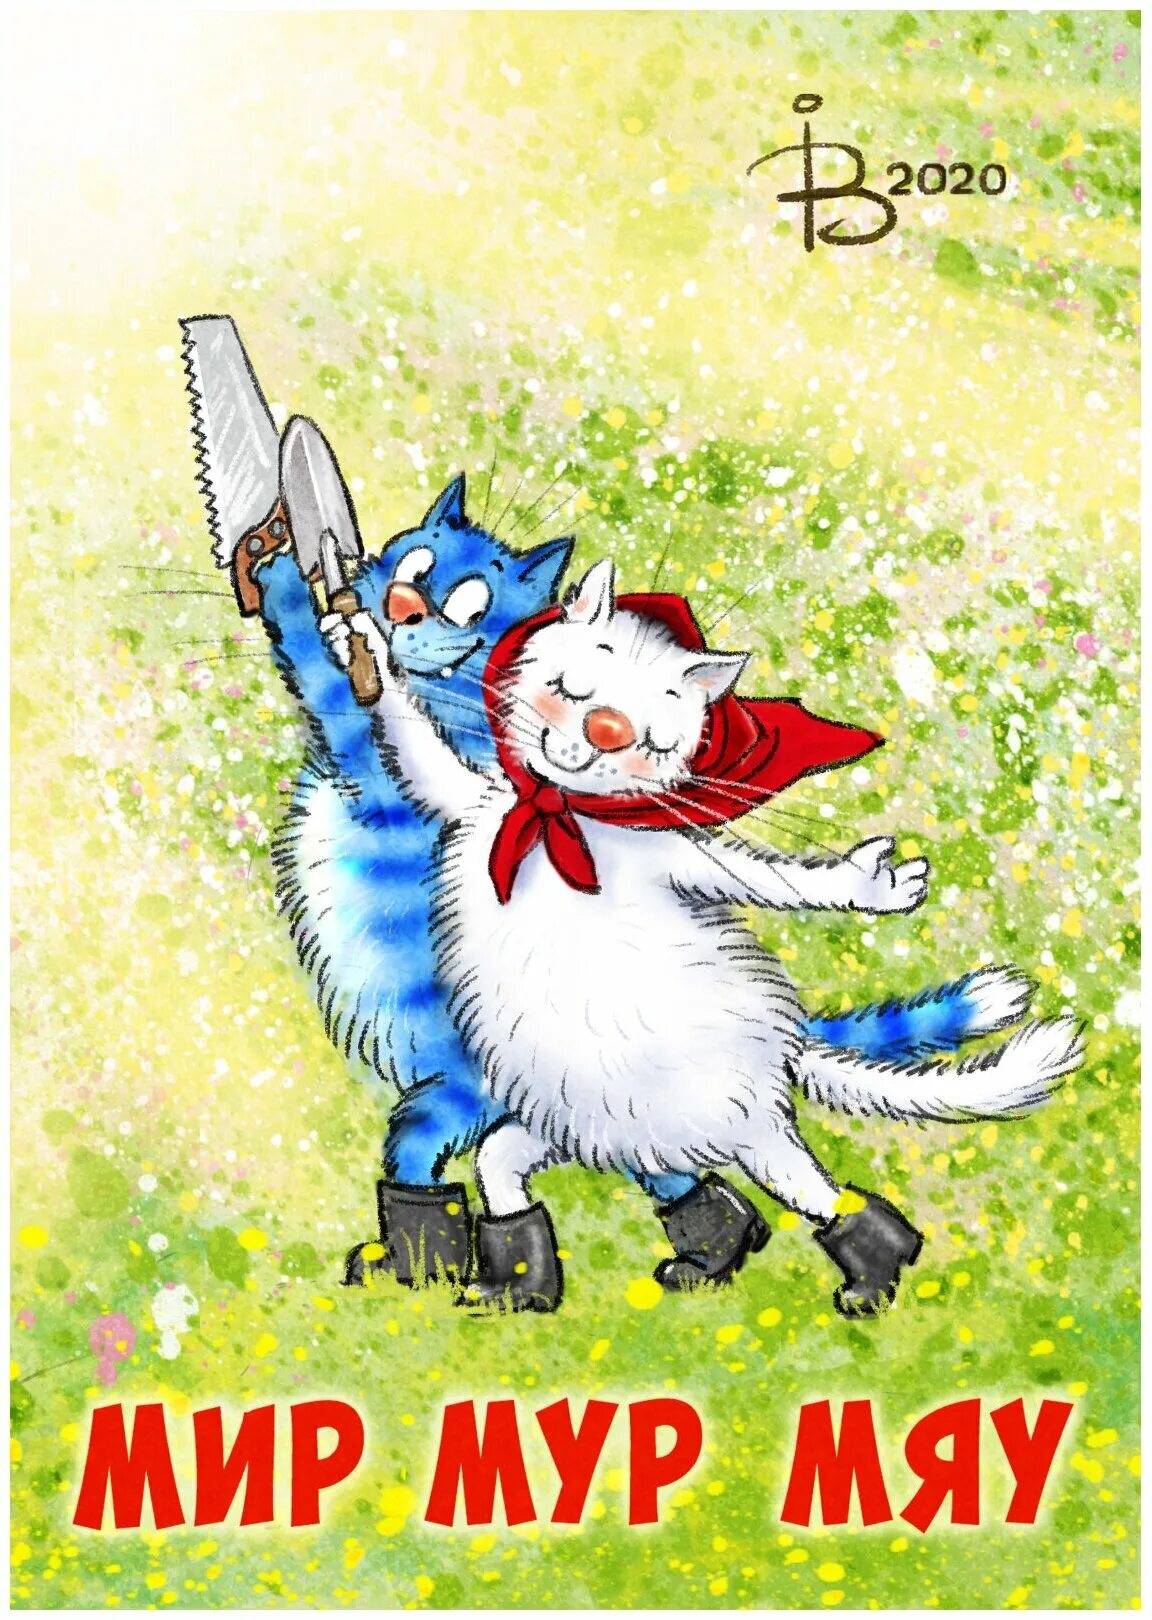 Песни мяу мур мур. Синие коты. Синие коты 1 мая. Мир труд май синие коты. Первомай открытки с котиками.